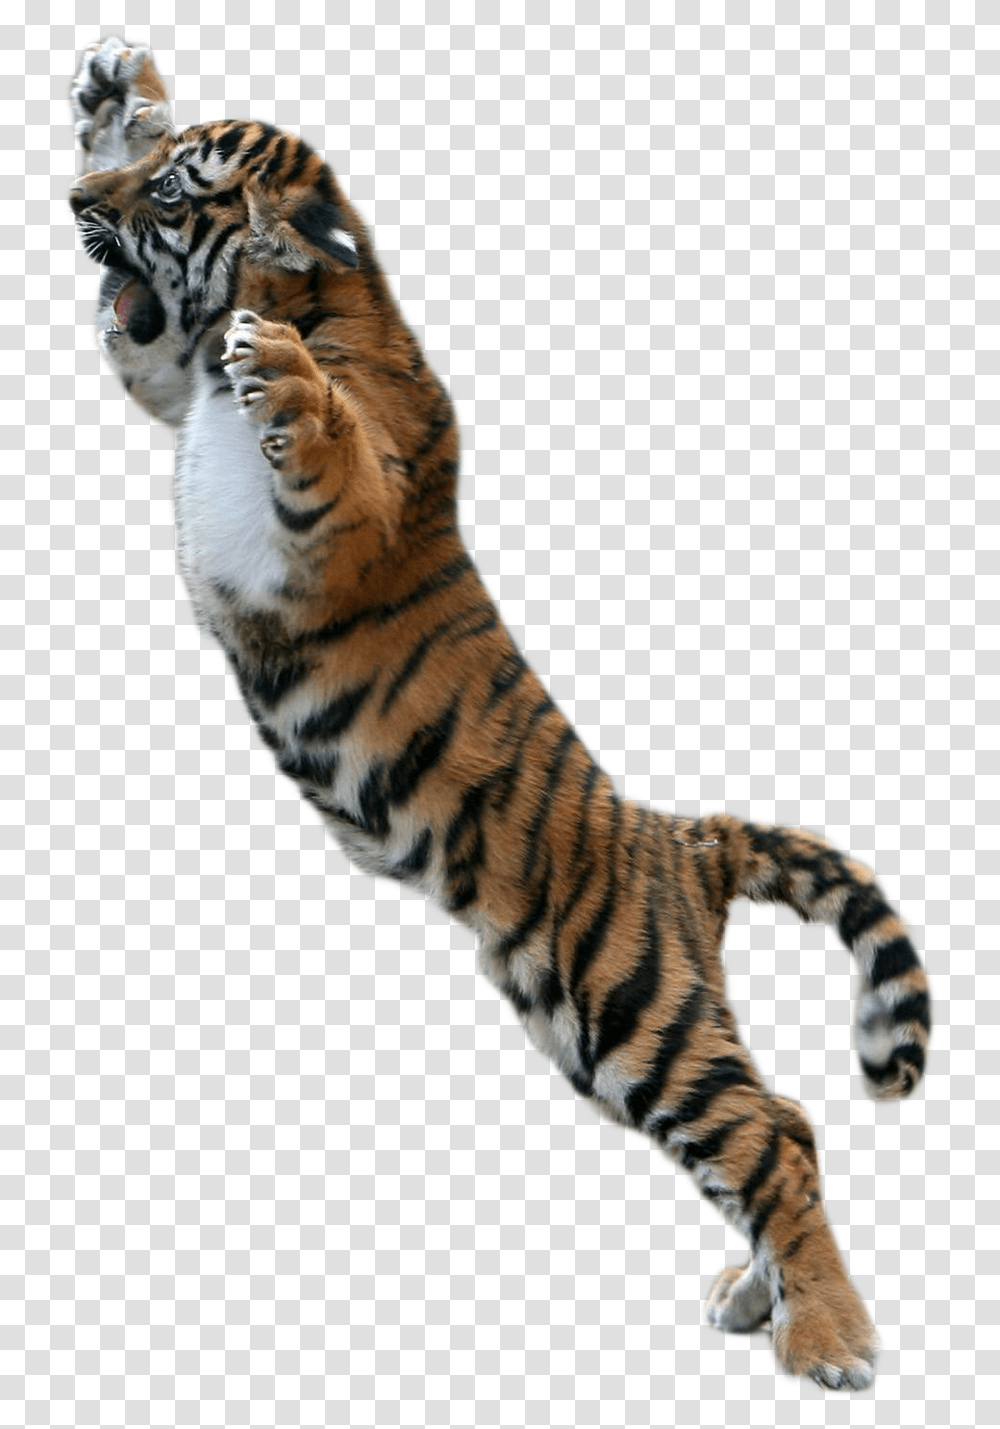 Tiger For Picsart, Wildlife, Mammal, Animal, Panther Transparent Png